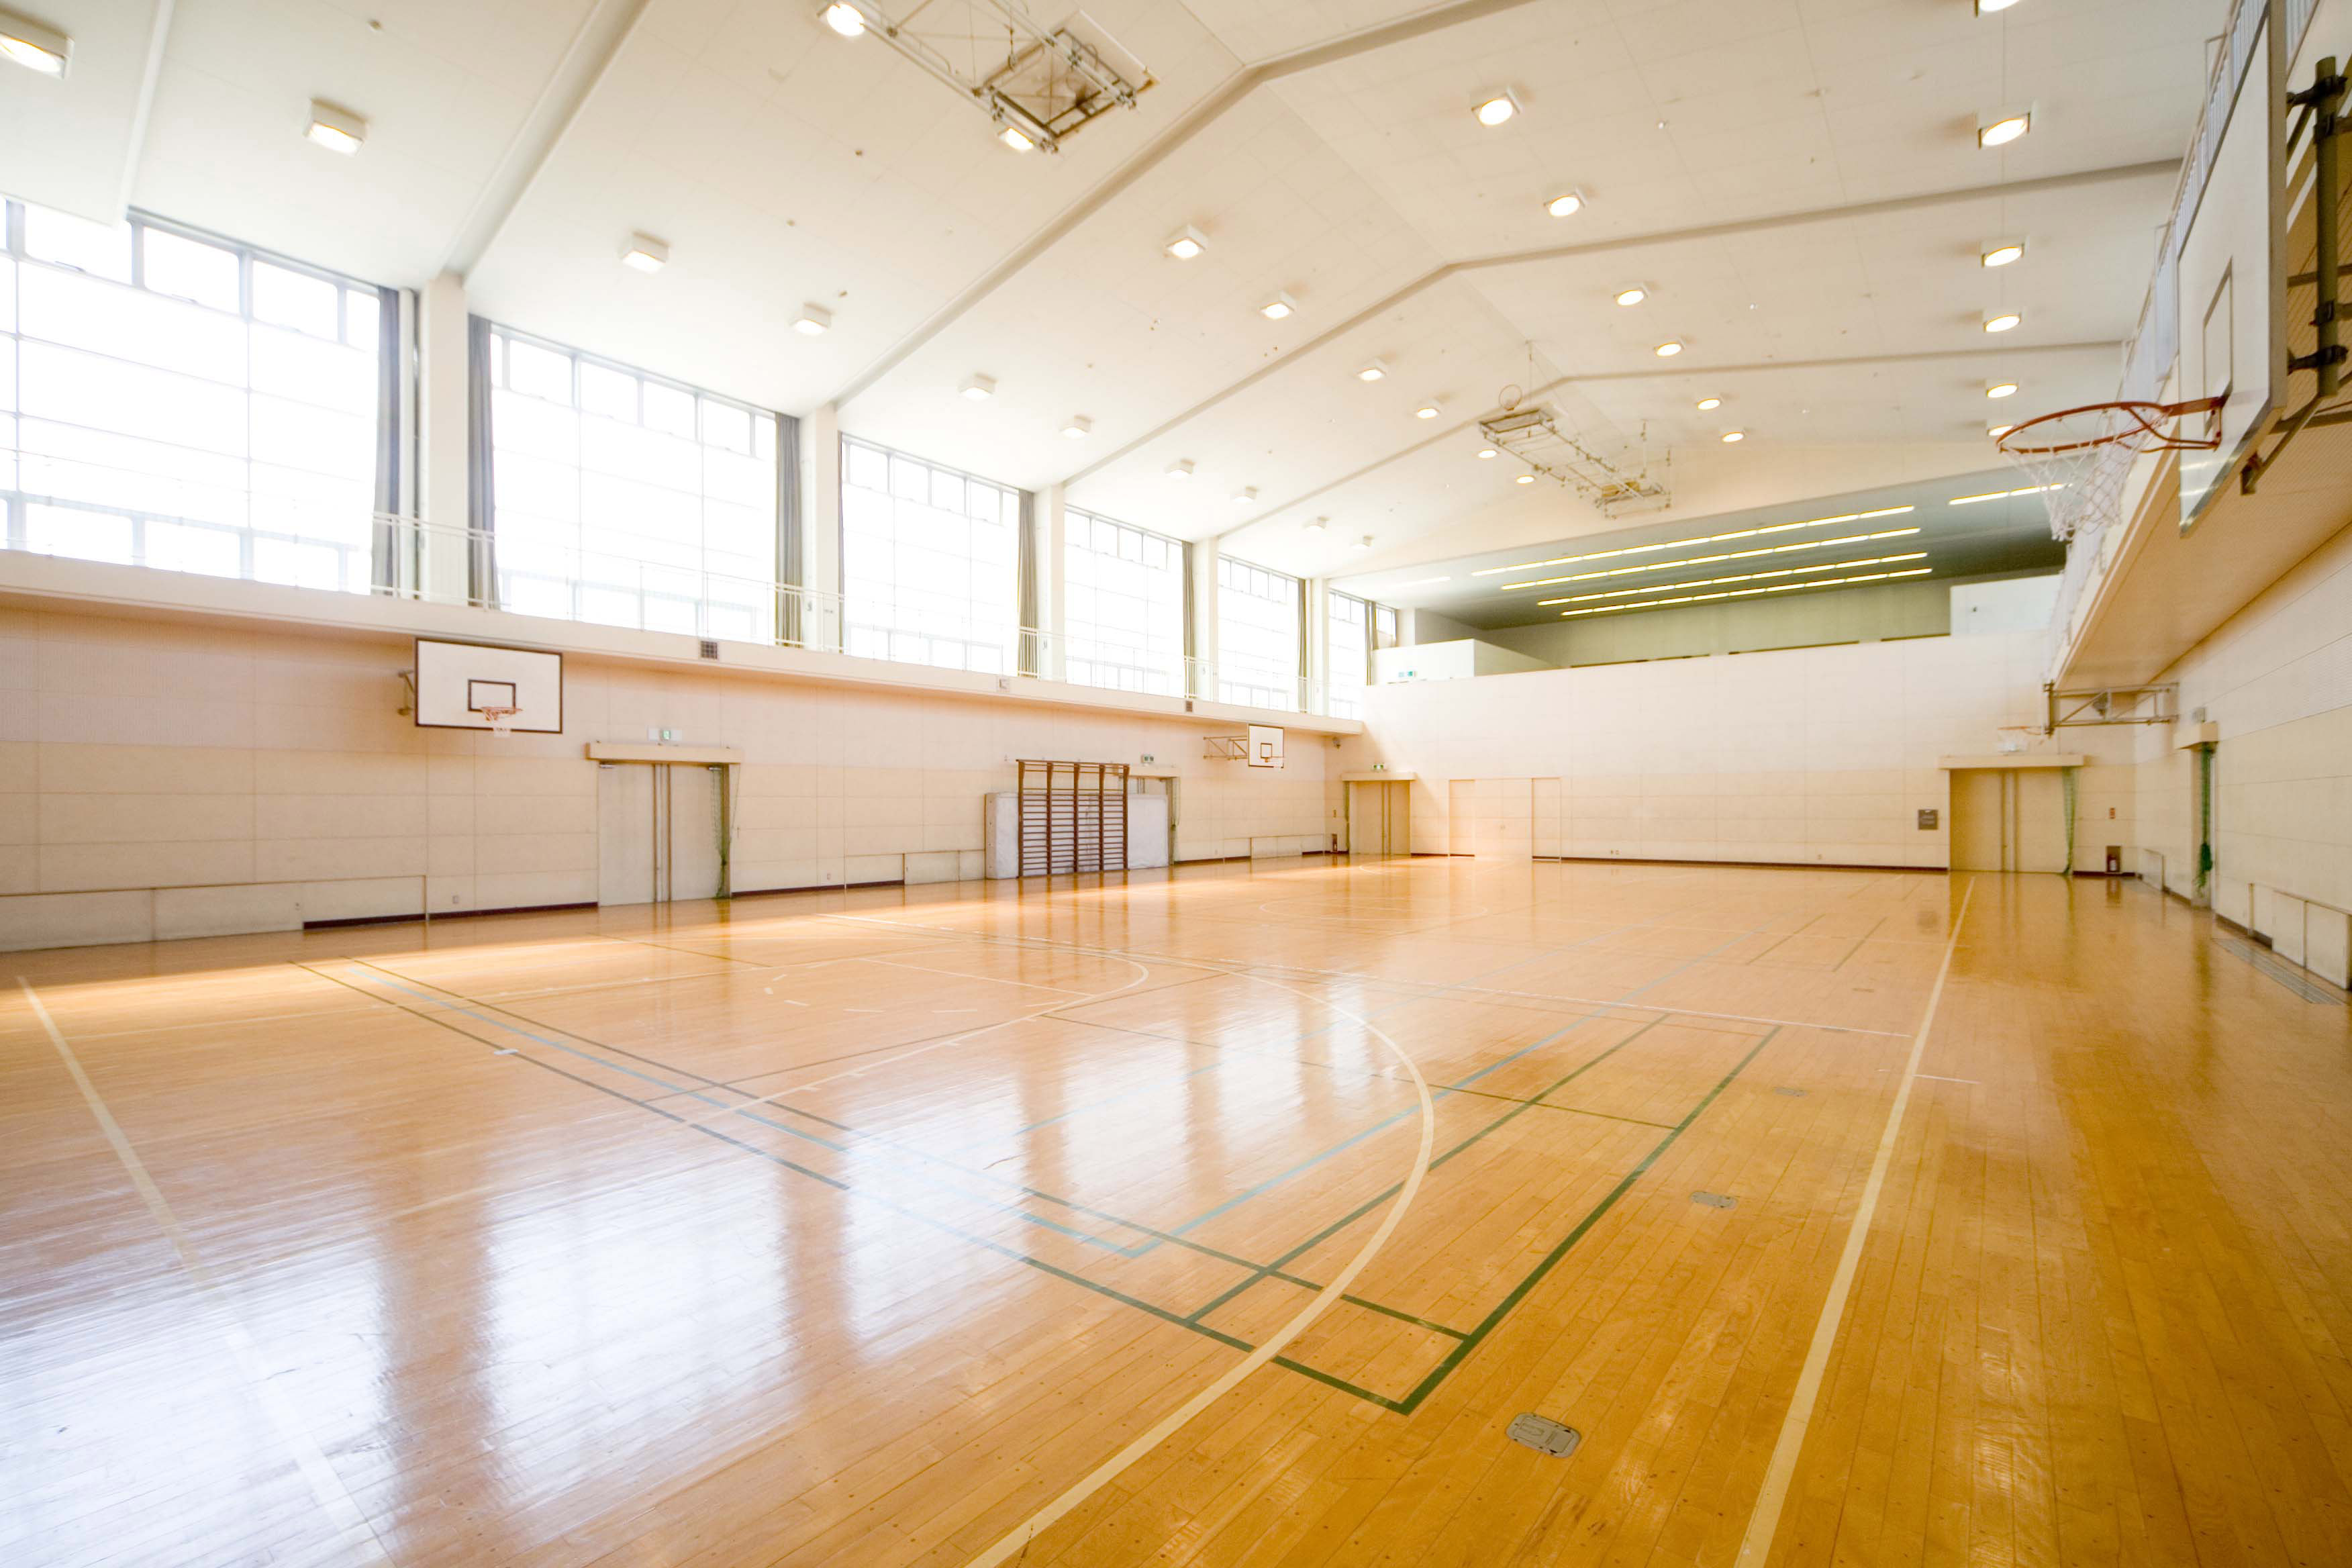 名古屋経営短期大学のスポーツ施設